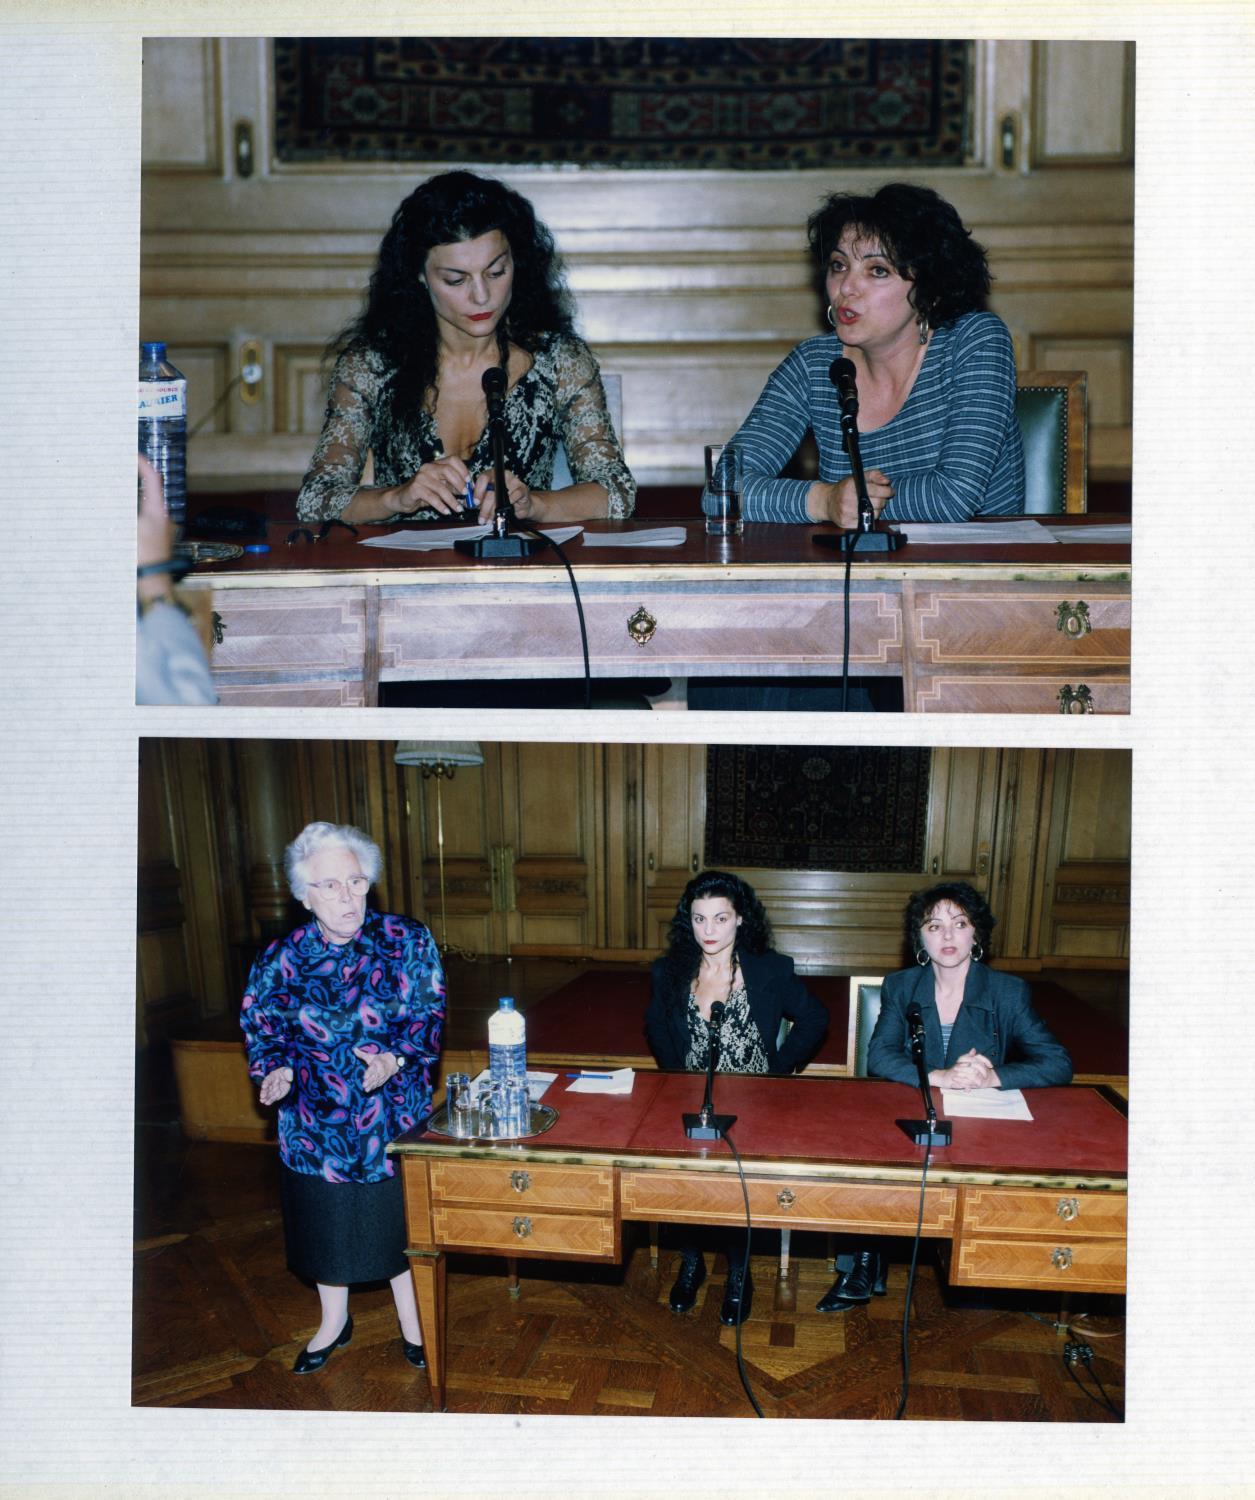 Fotografias em álbum da inauguração da exposição e da conferência «Les Vues de L'Esprit», proferida por Karine Saporta e Sophie Lucet